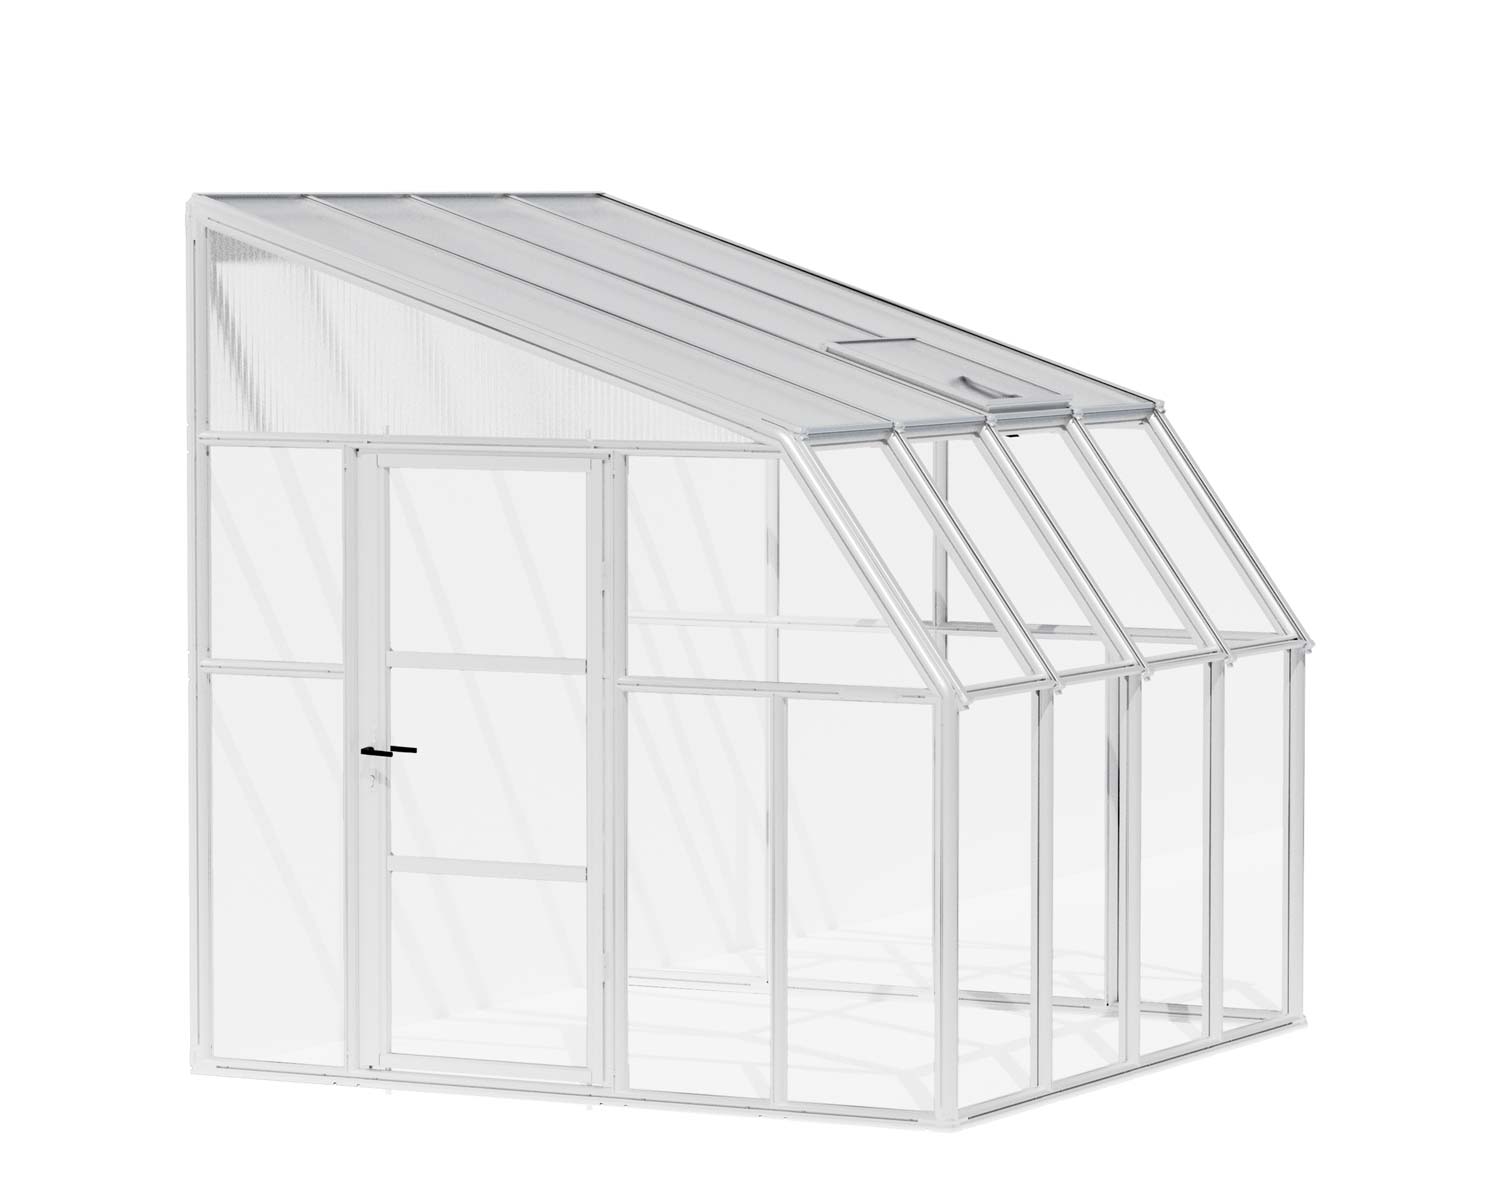 Solarium SunRoom Kit 8 ft. x 8 ft. White Structure & Hybrid Glazing